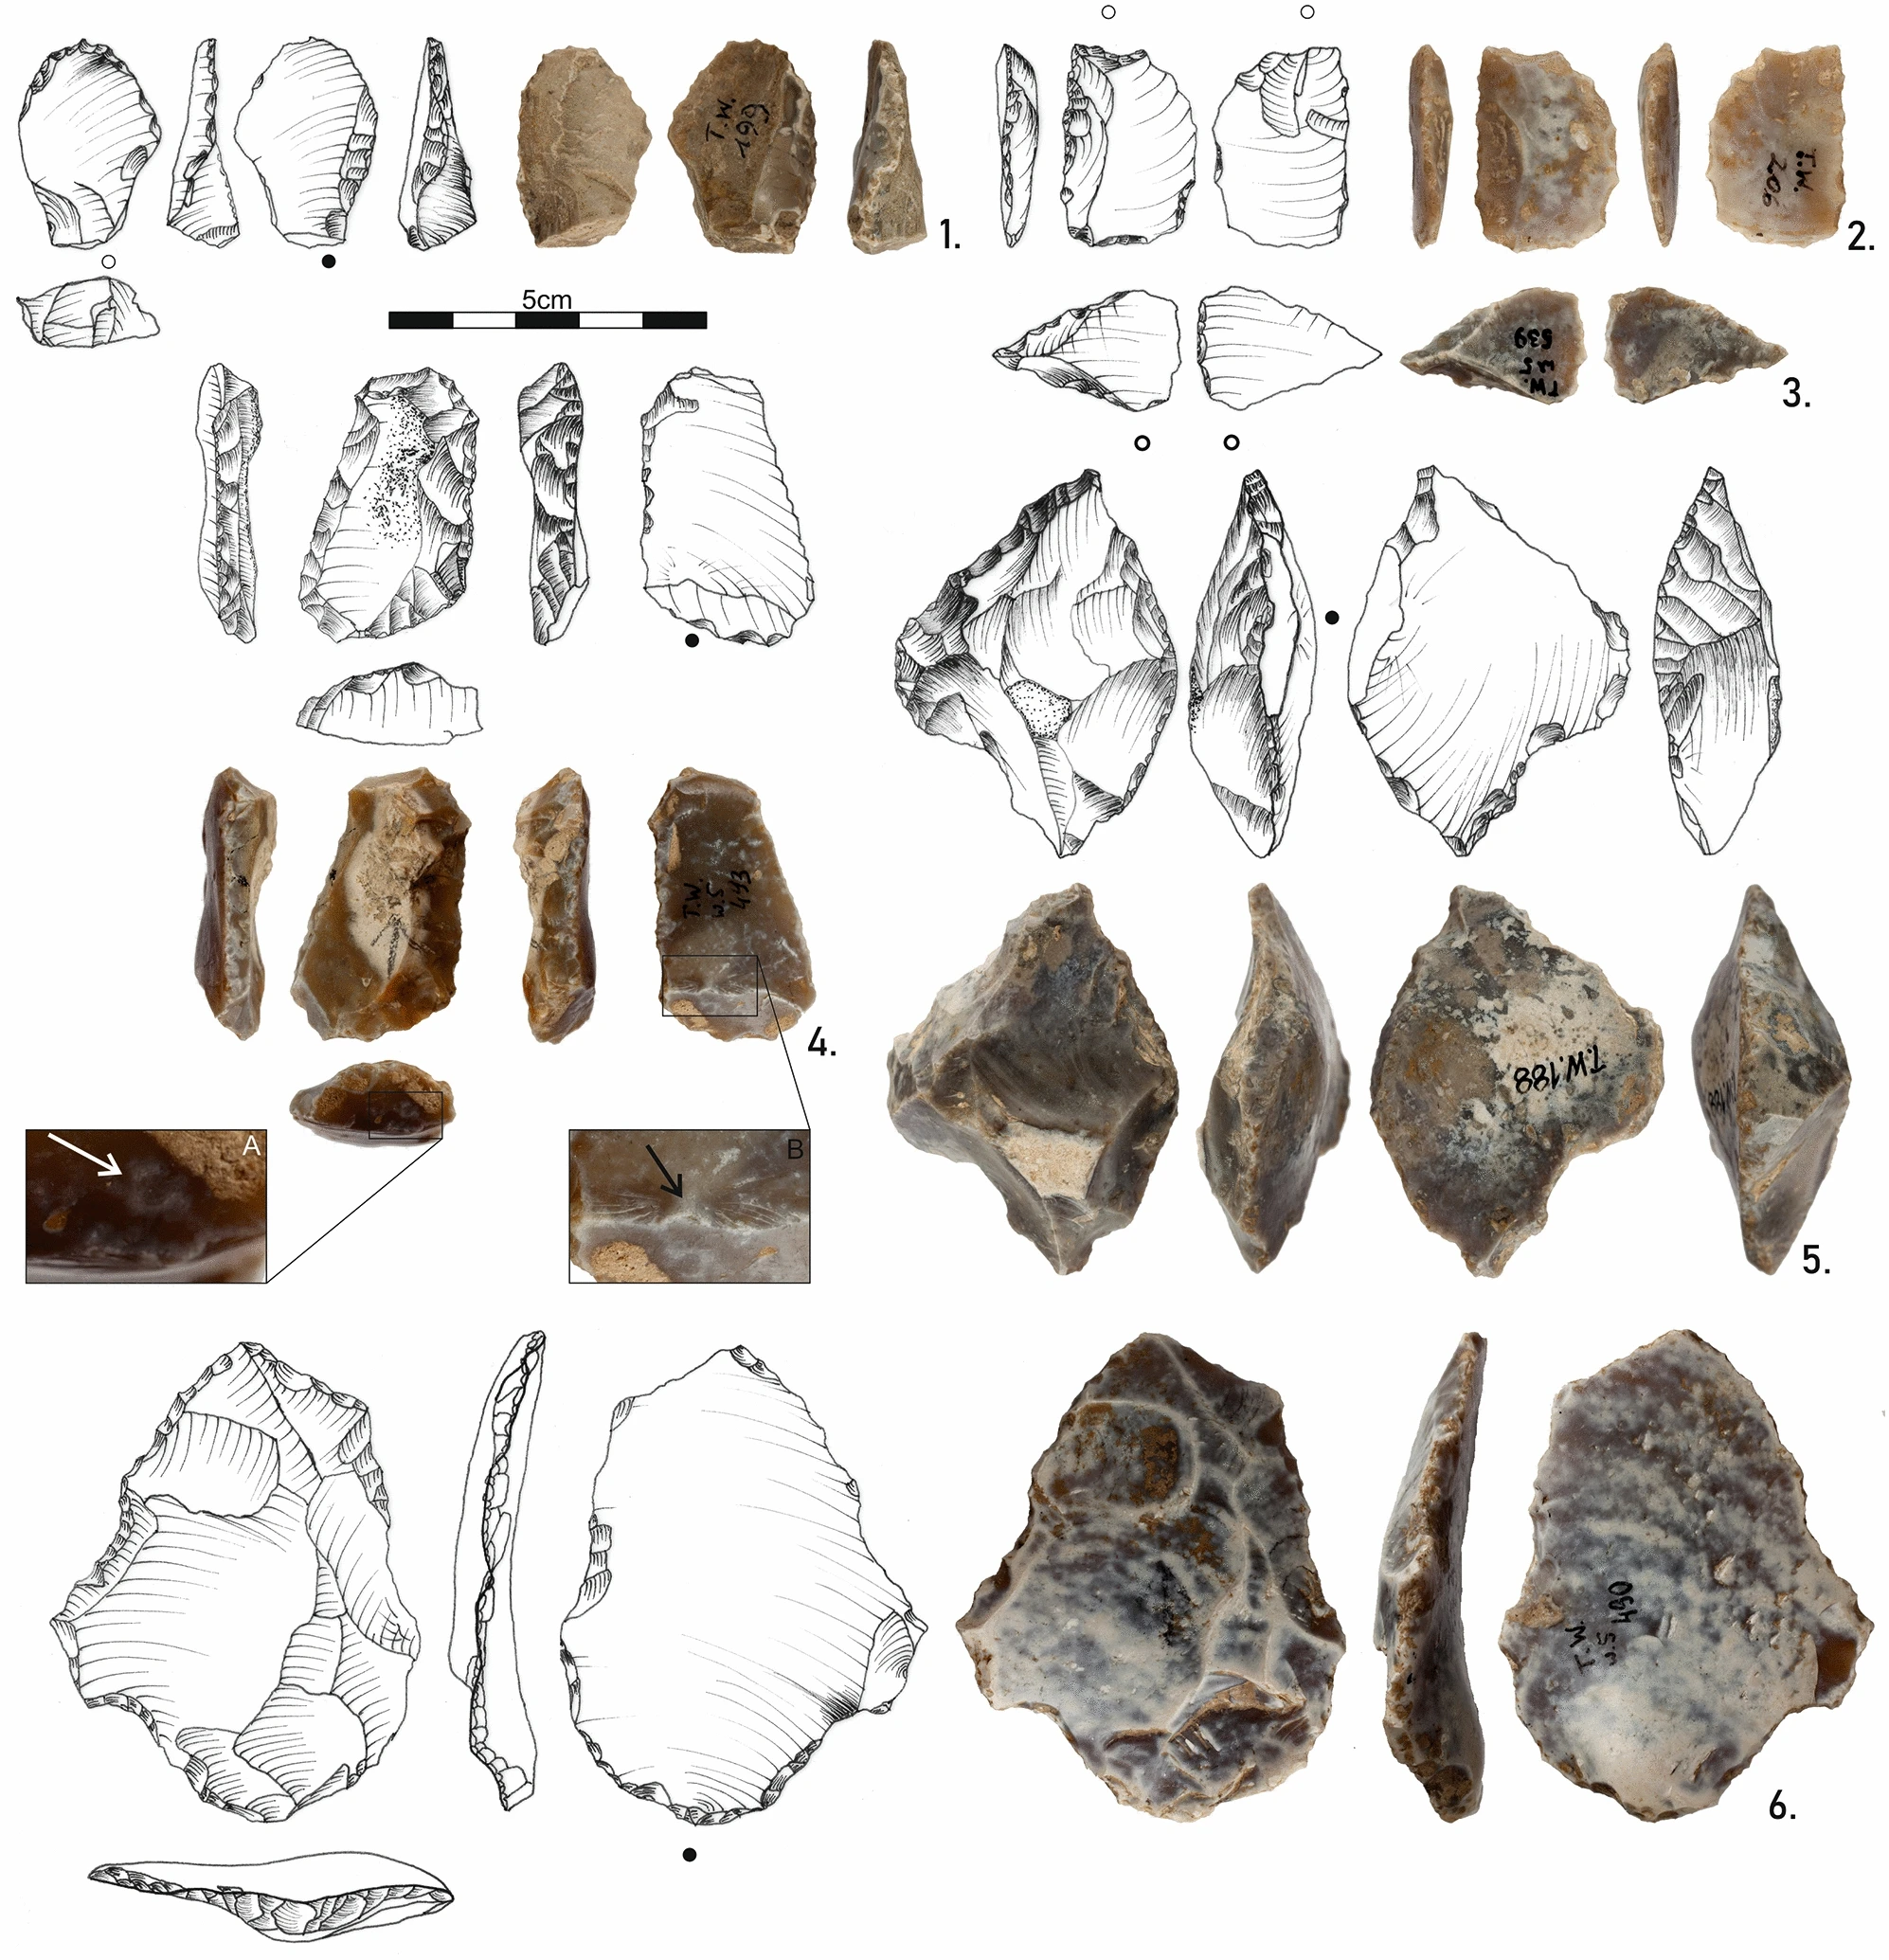 Ukázka nástrojů objevených v Cave Tunel Wielki. Vědci tvrdí, že tyto artefakty jsou staré půl milionu let